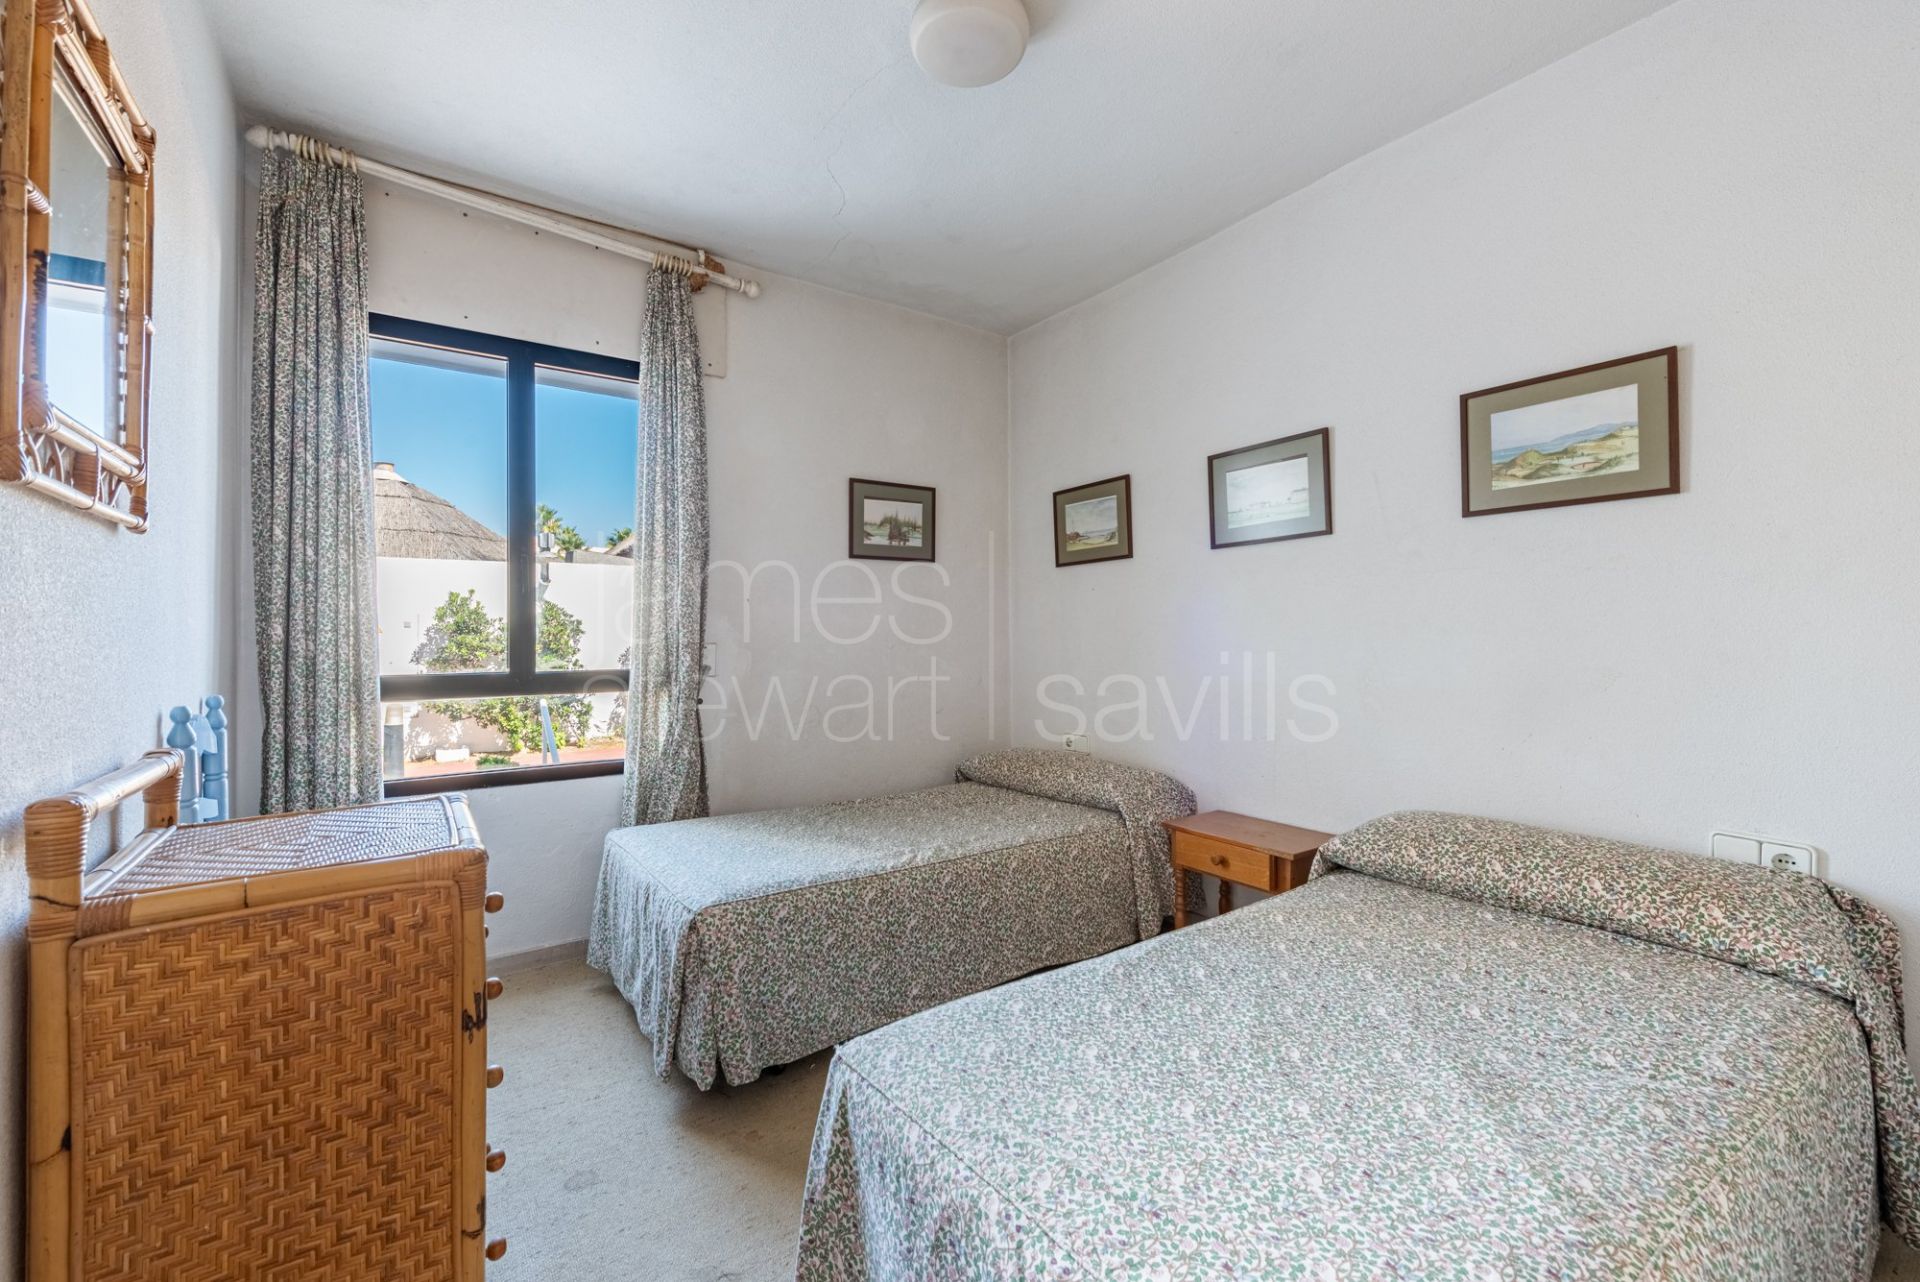 Apartamento de 4 dormitorios con jardín frente al mar Mediterráneo y el Peñón de Gibraltar